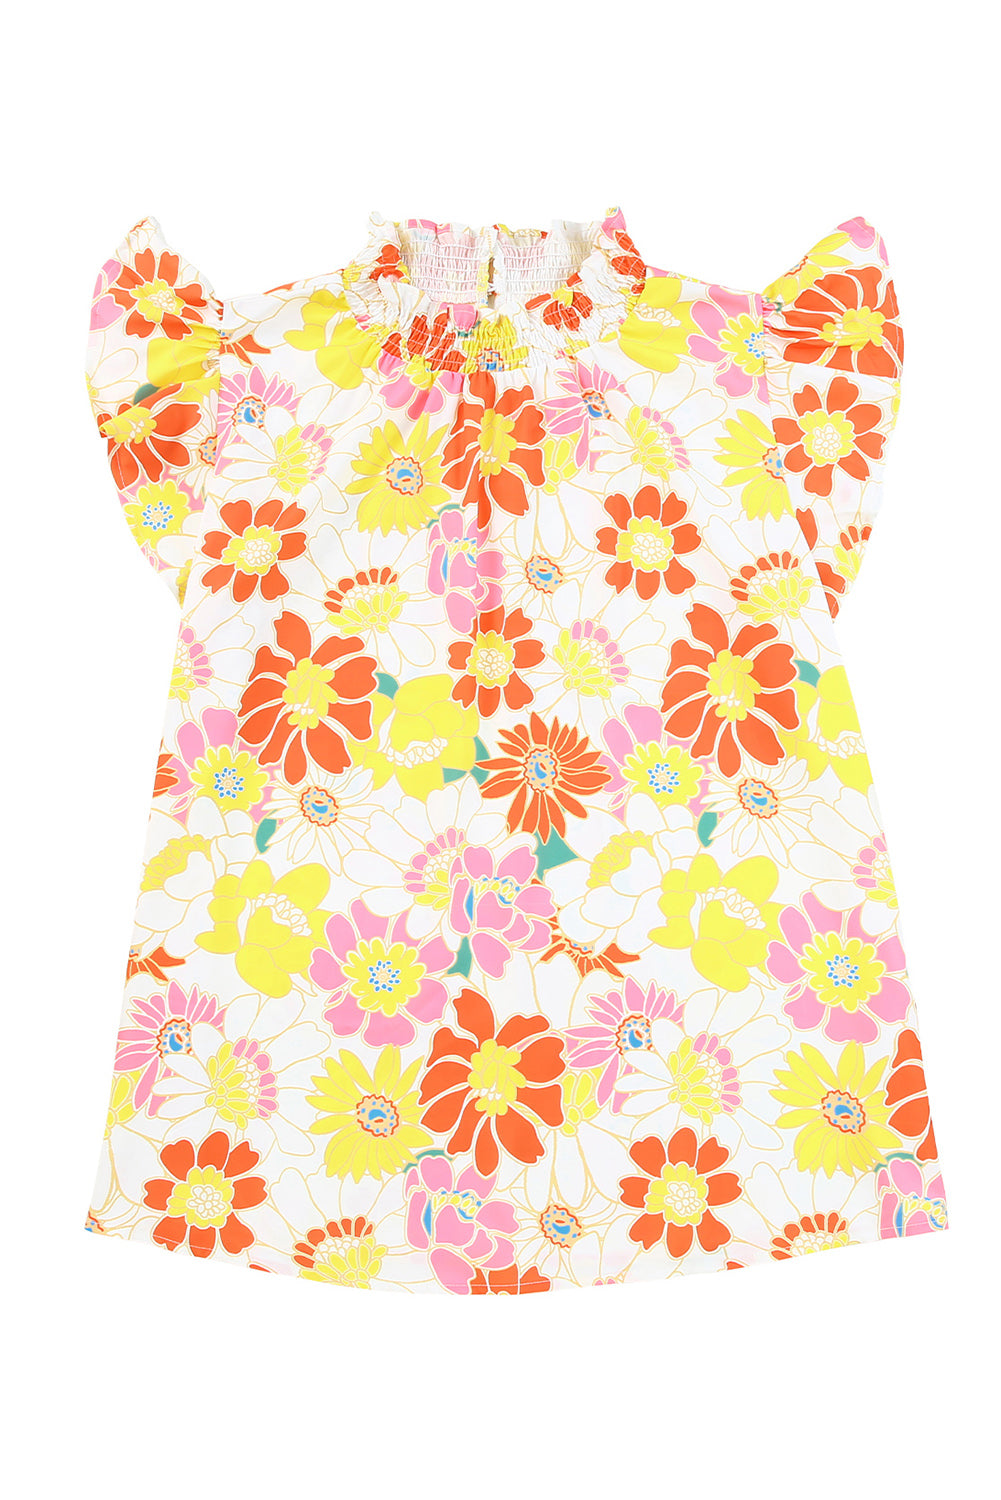 Večbarvna bluza z naborki in cvetličnimi rokavi velike velikosti